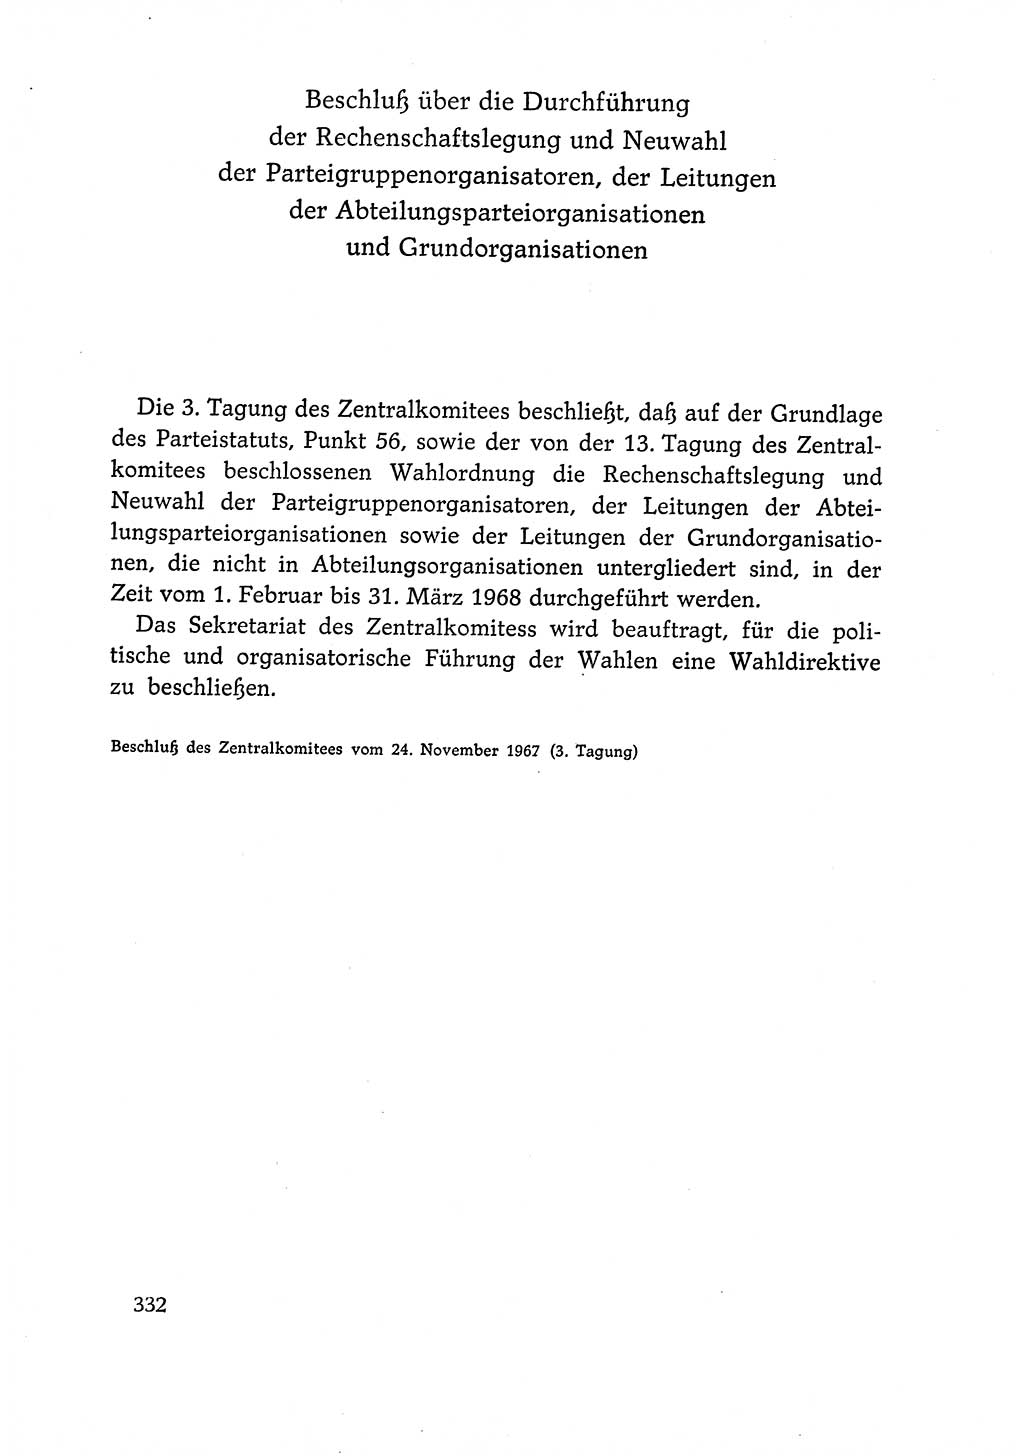 Dokumente der Sozialistischen Einheitspartei Deutschlands (SED) [Deutsche Demokratische Republik (DDR)] 1966-1967, Seite 332 (Dok. SED DDR 1966-1967, S. 332)